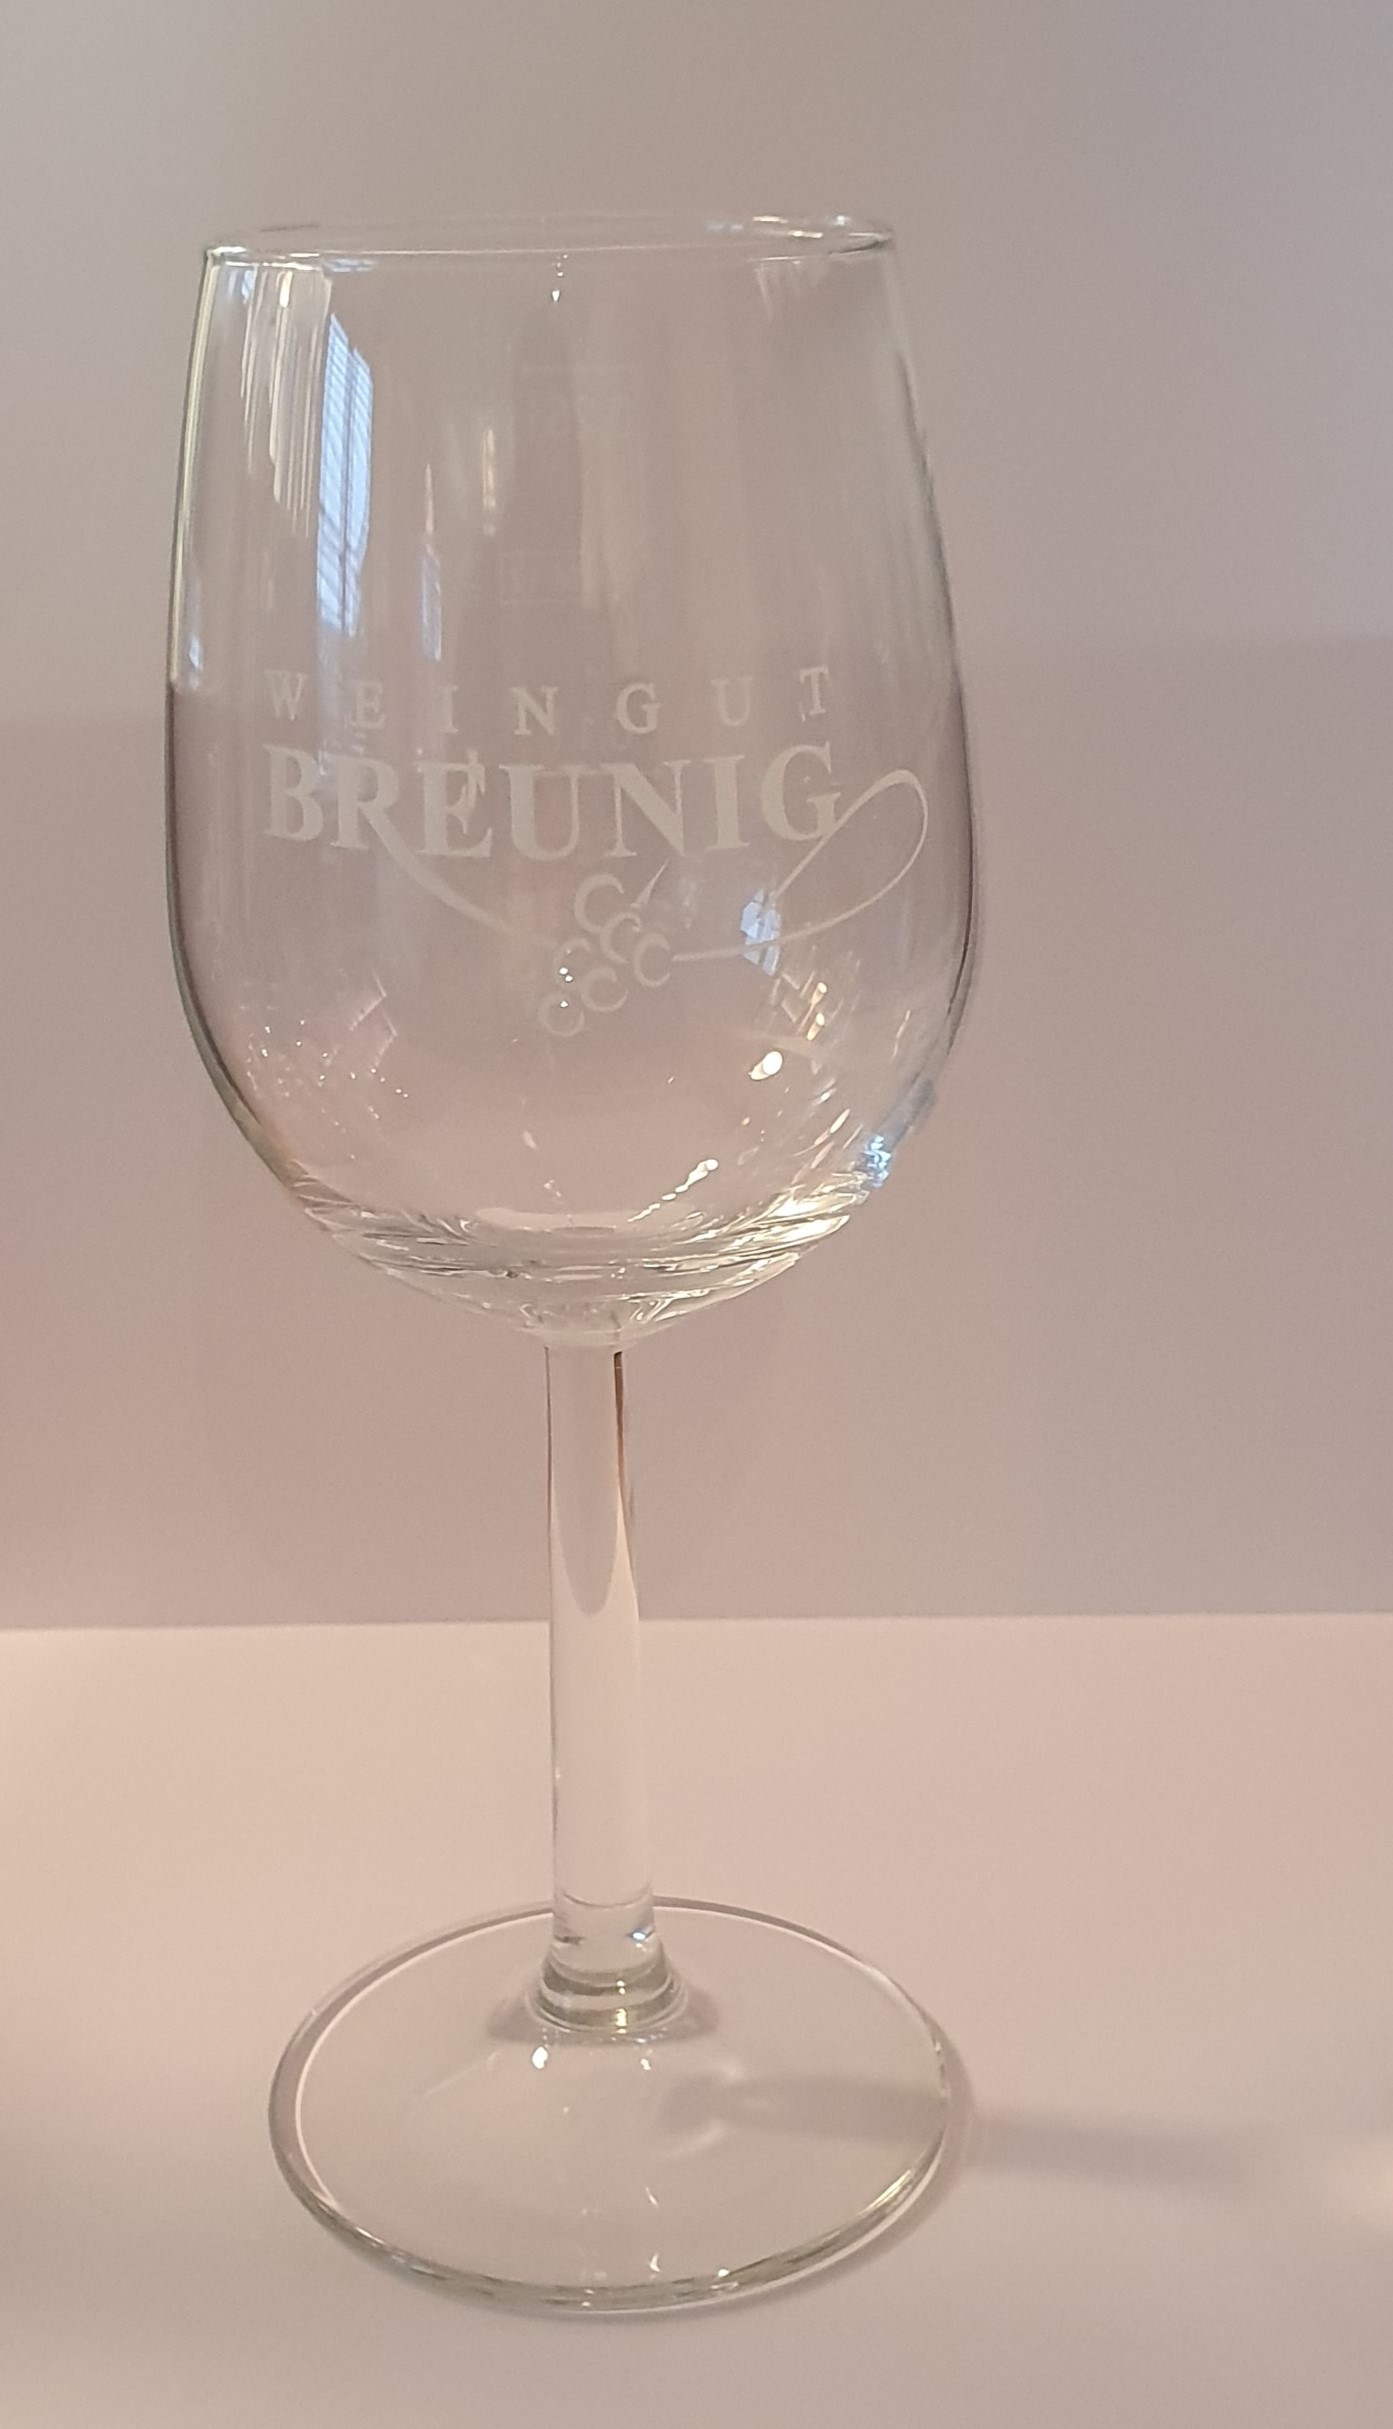 Weinstielglas "Weingut Breunig"